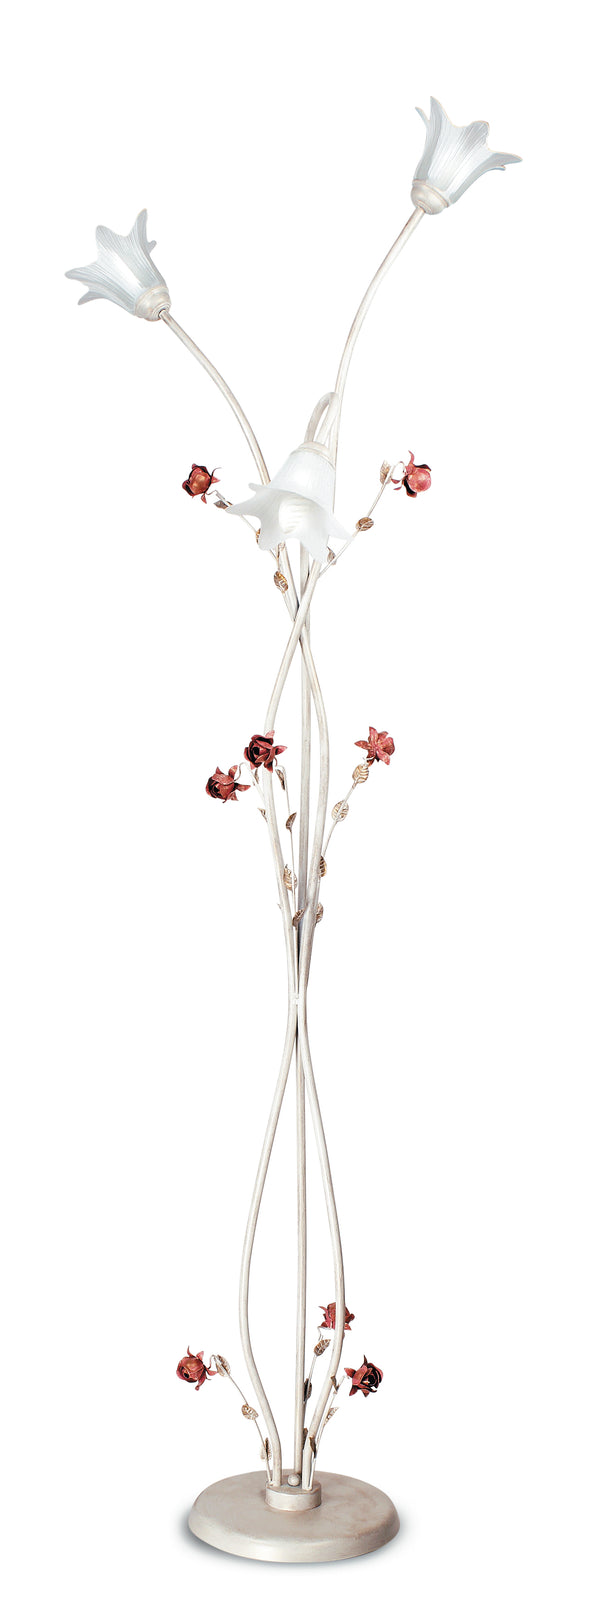 Piantana Elegante Rose Metallo Bianco Rosso diffusori Vetro Lampada da Terra Classica E14 prezzo